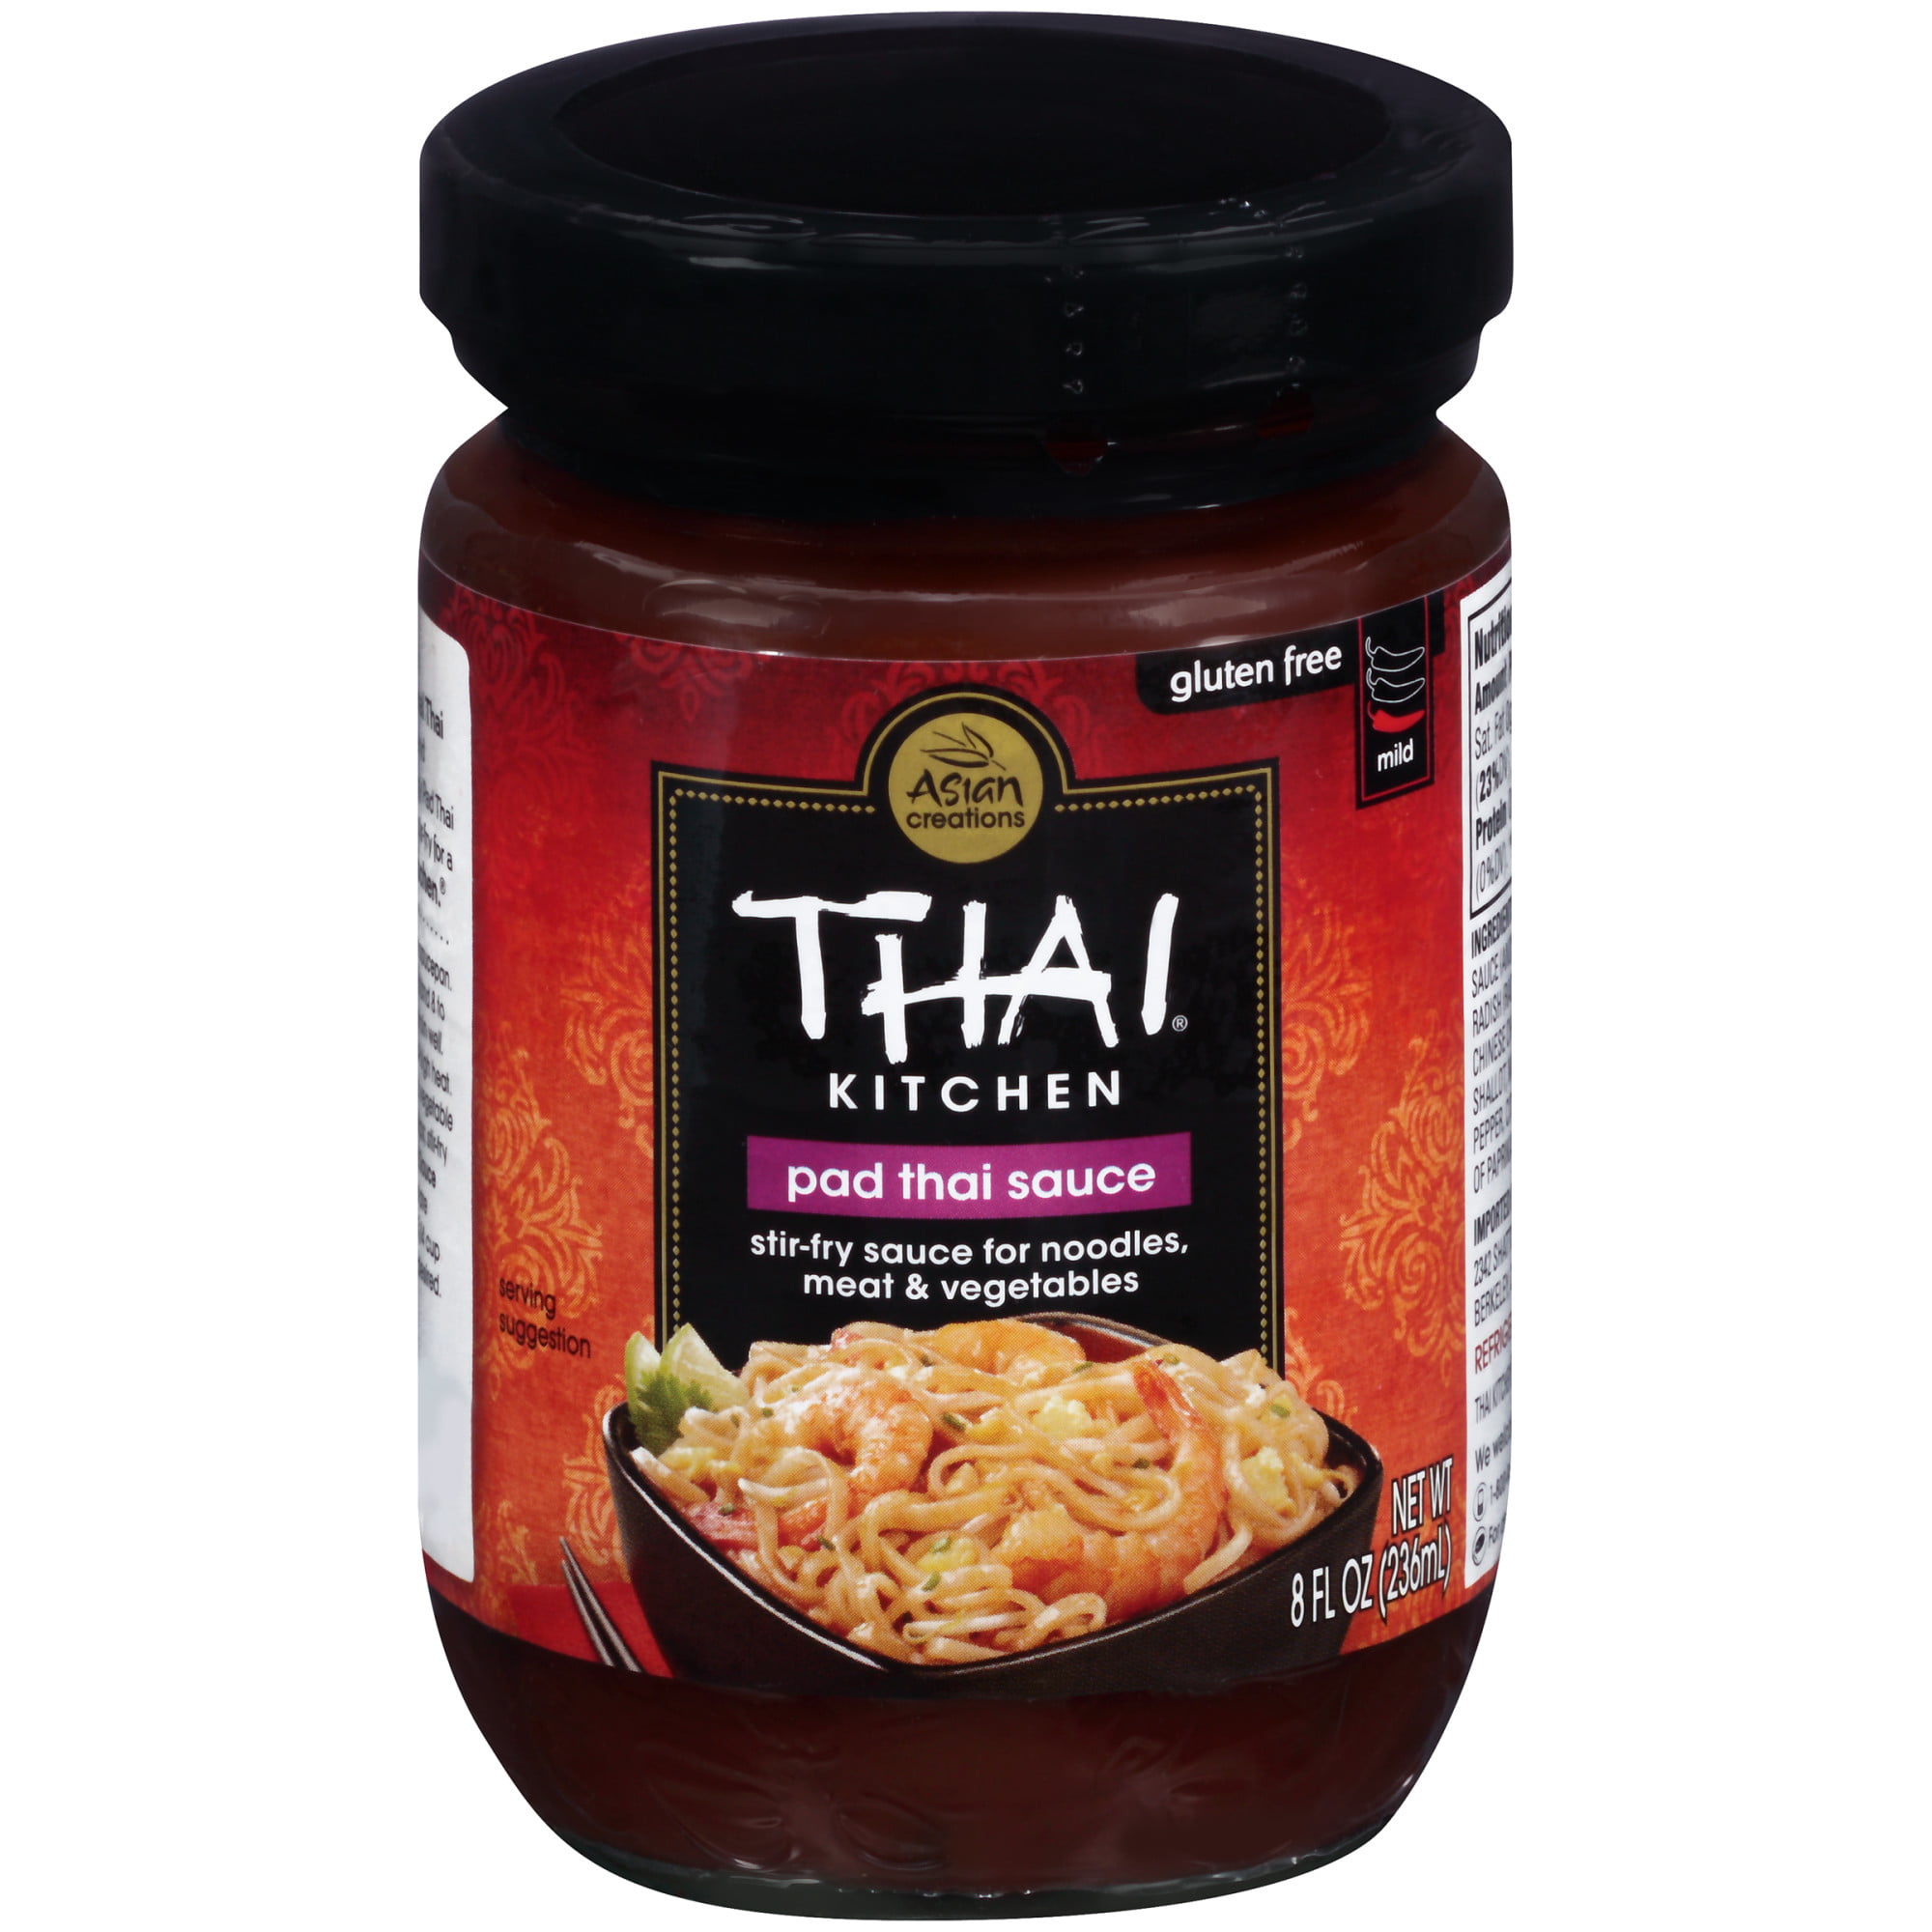 (2 Pack) Thai Kitchen Gluten Free Pad Thai Sauce, 8 fl oz (2 pack